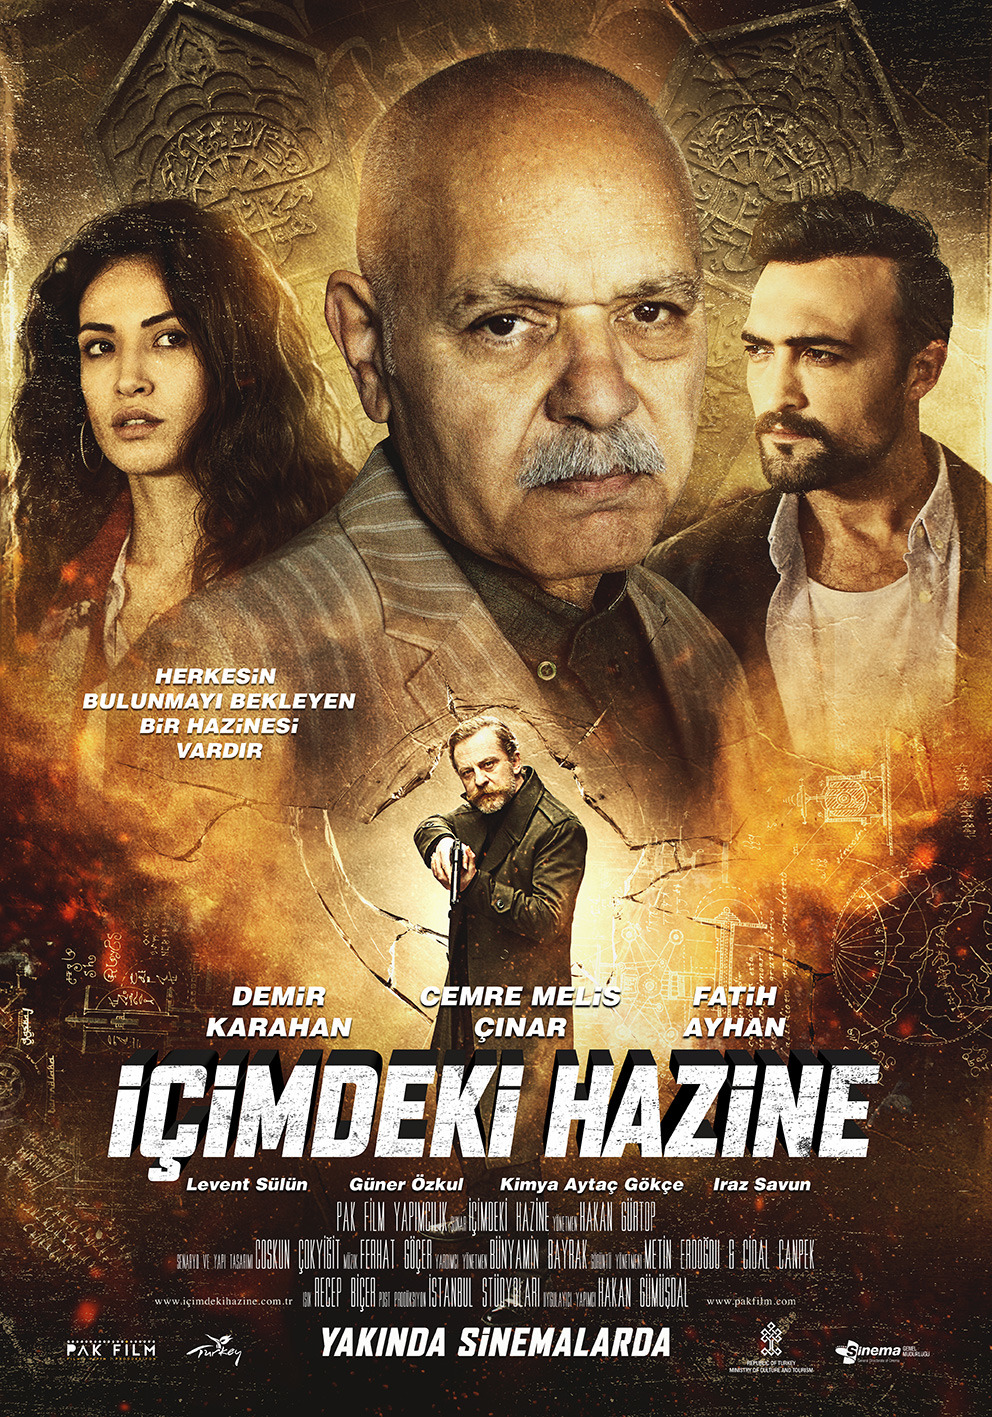 Extra Large Movie Poster Image for Icimdeki Hazine (#1 of 2)